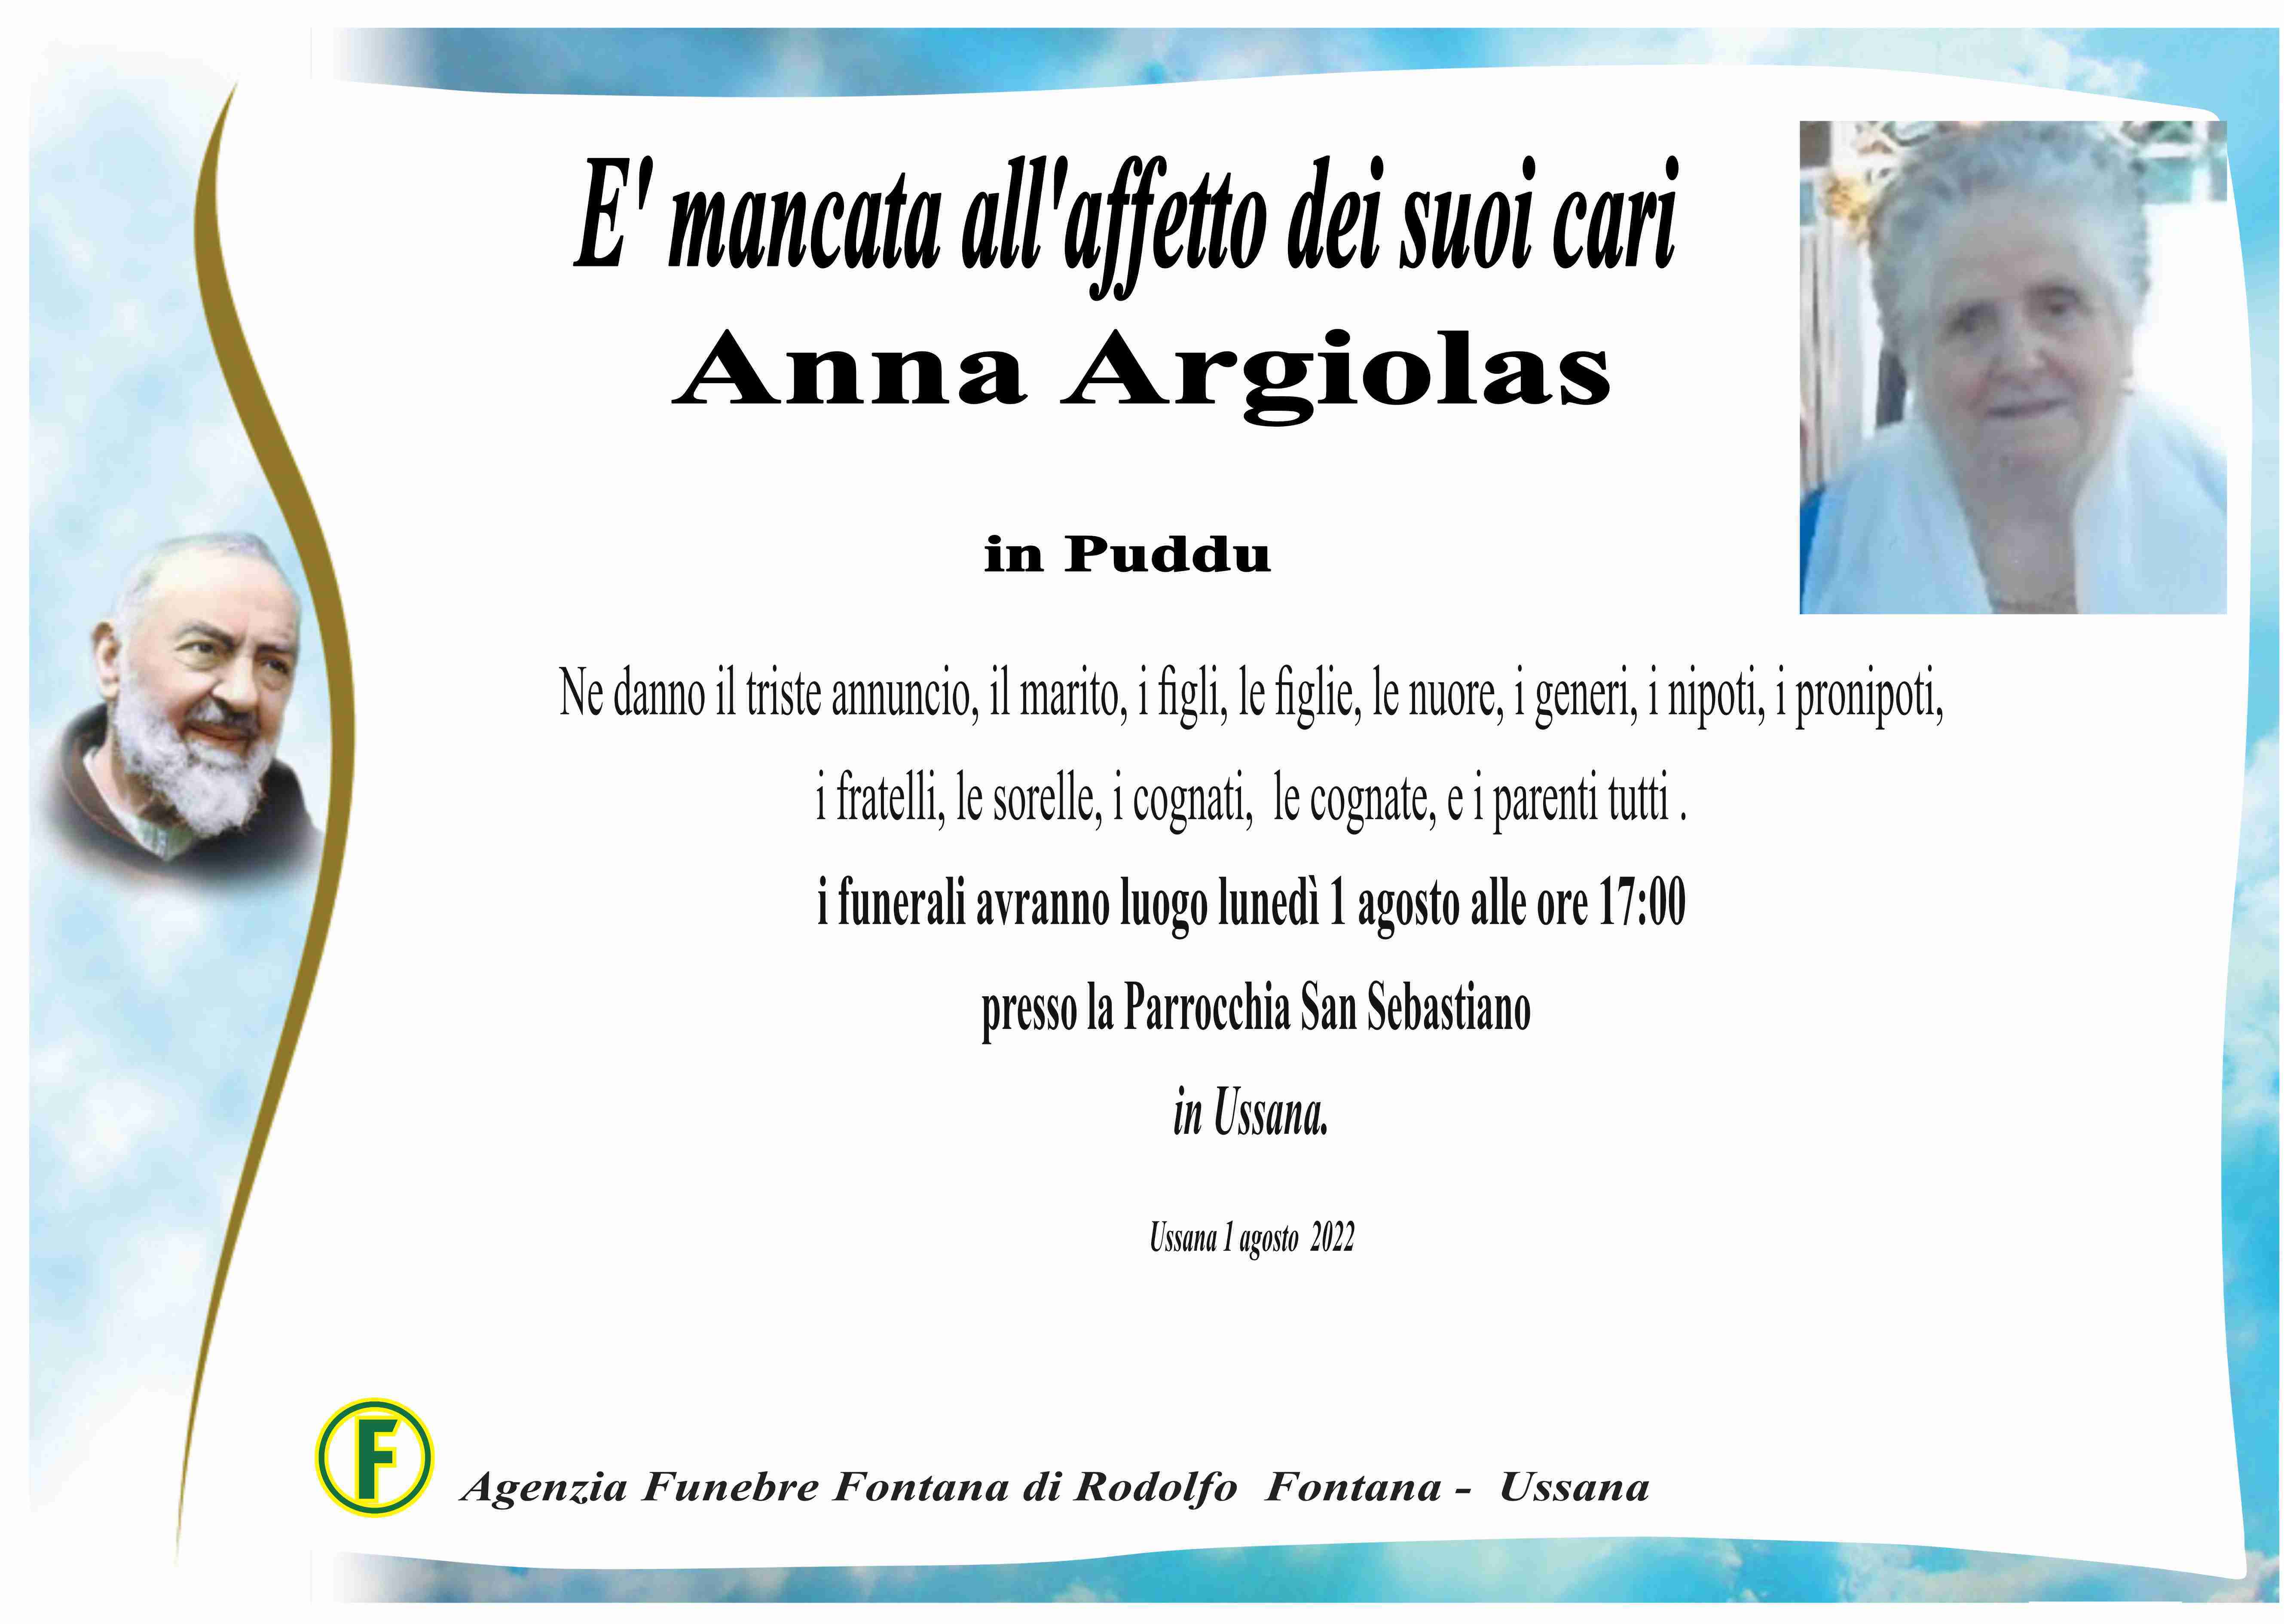 Anna Argiolas